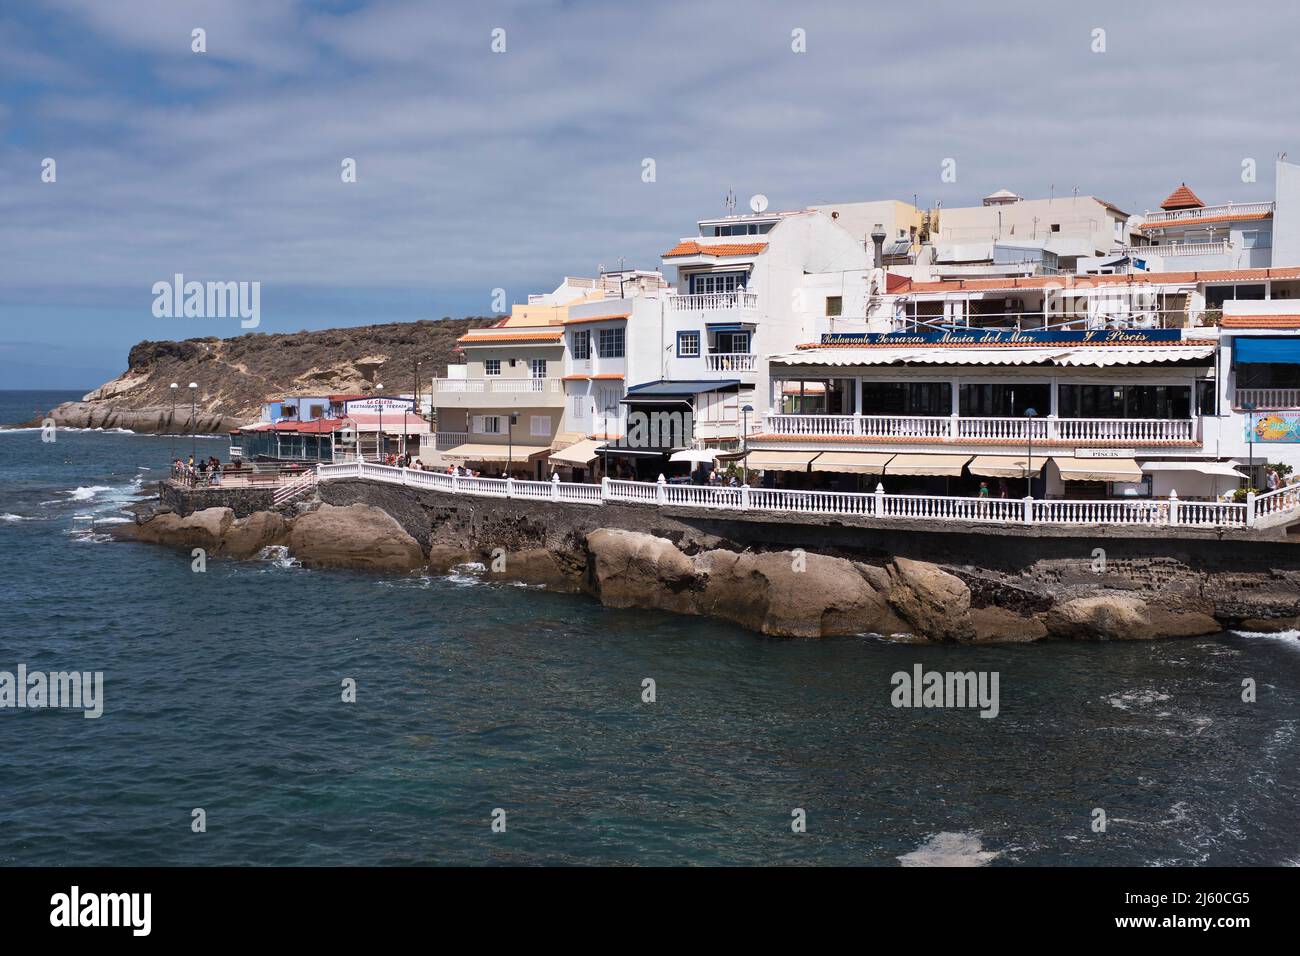 dh La Caleta Restaurants COSTA ADEJE TENERIFE Coastal promenade restaurant coast Stock Photo